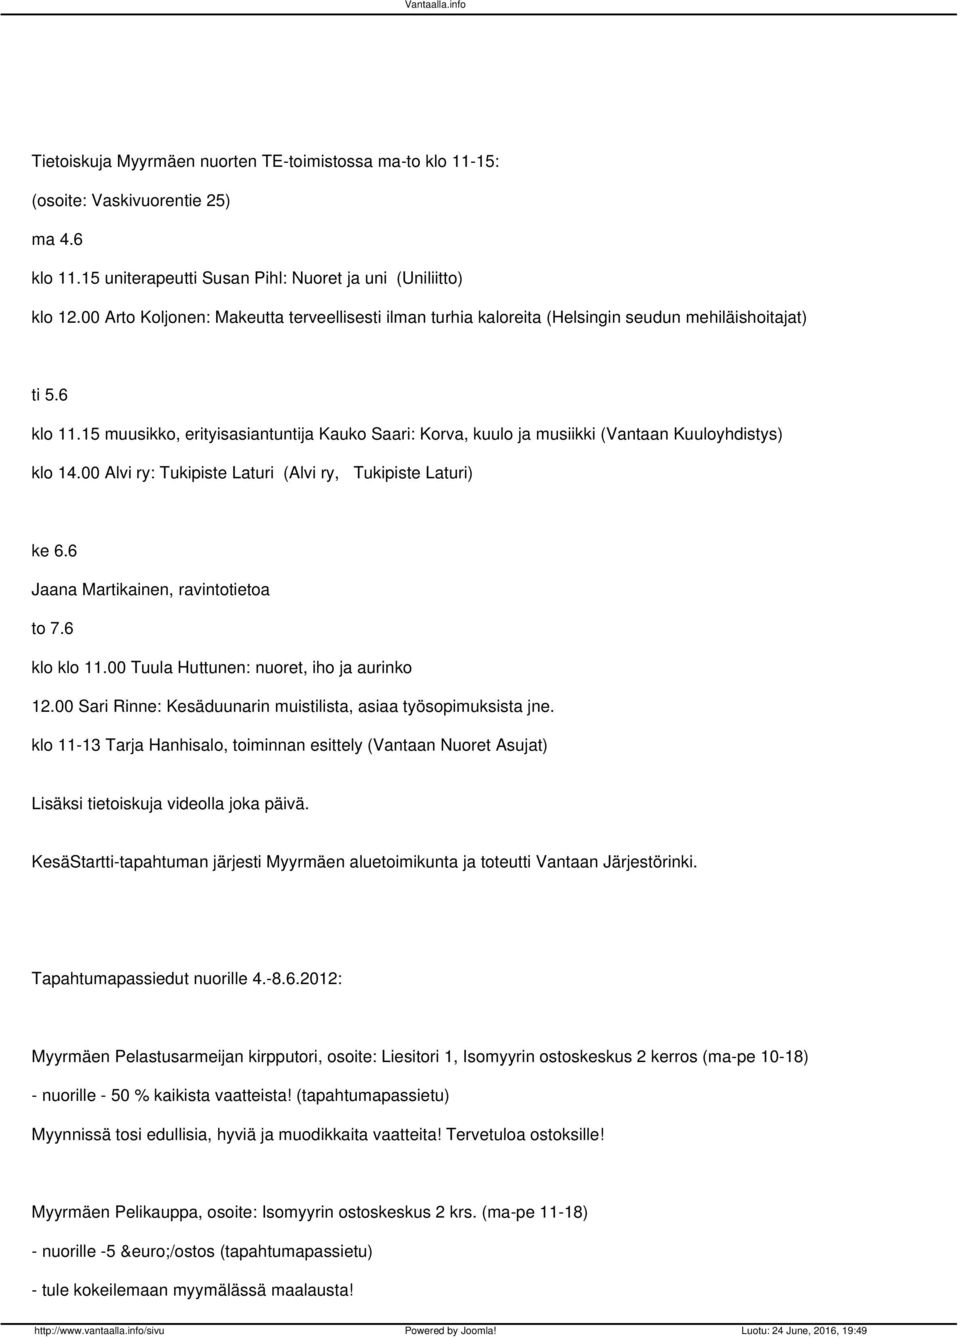 15 muusikko, erityisasiantuntija Kauko Saari: Korva, kuulo ja musiikki (Vantaan Kuuloyhdistys) klo 14.00 Alvi ry: Tukipiste Laturi (Alvi ry, Tukipiste Laturi) ke 6.